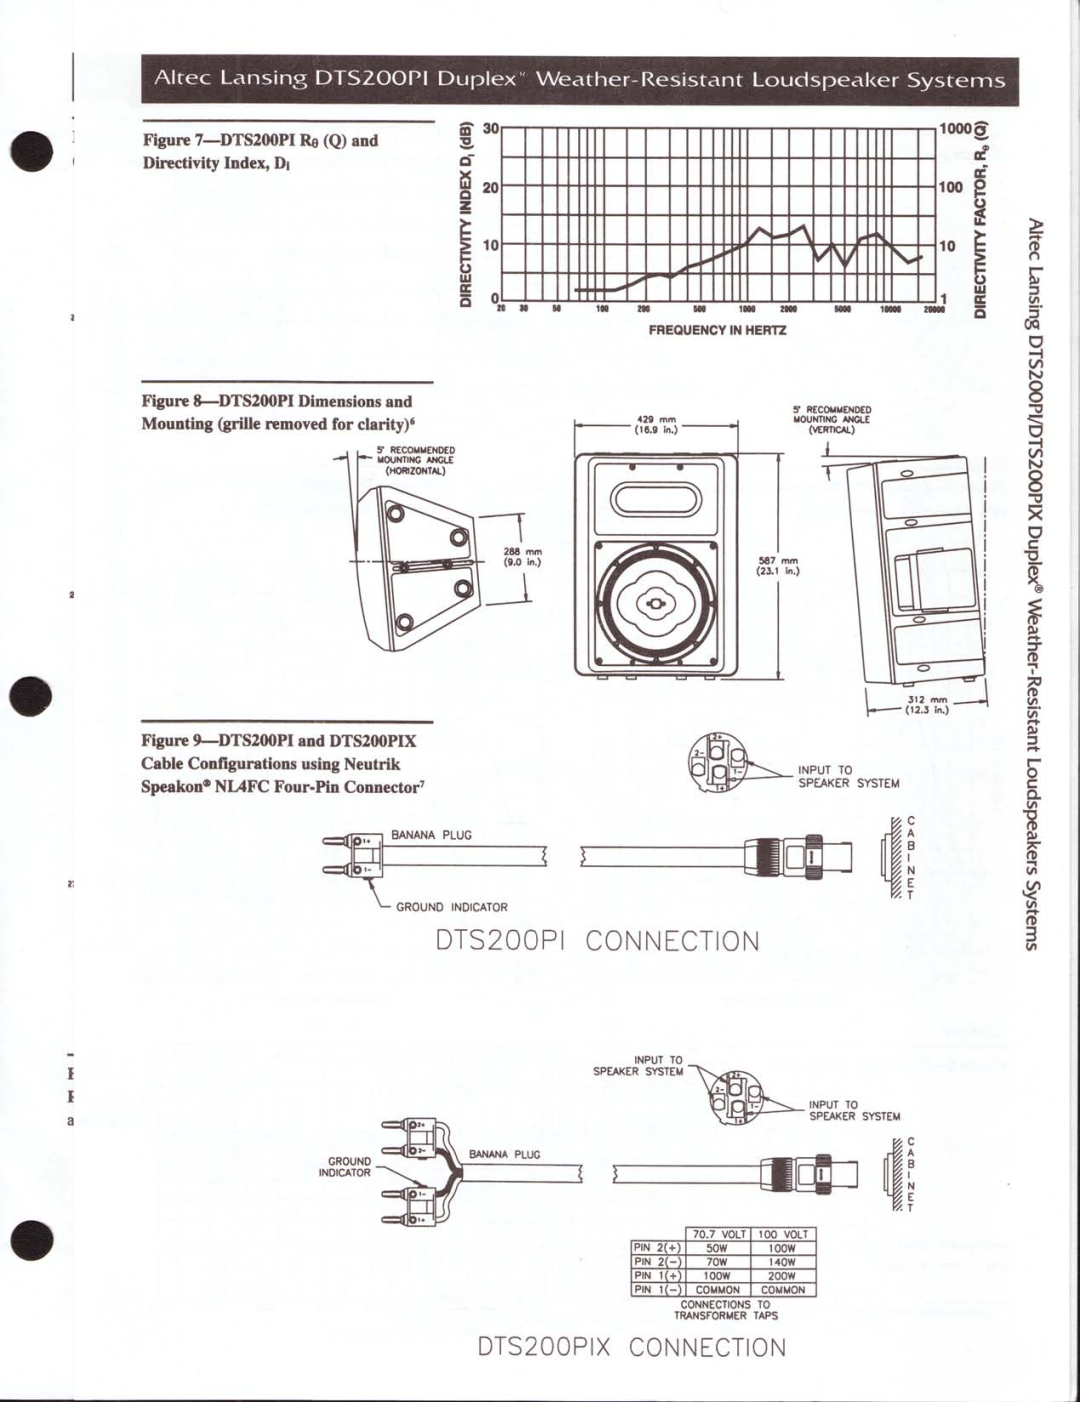 Altec Lansing DTS200PIX manual 